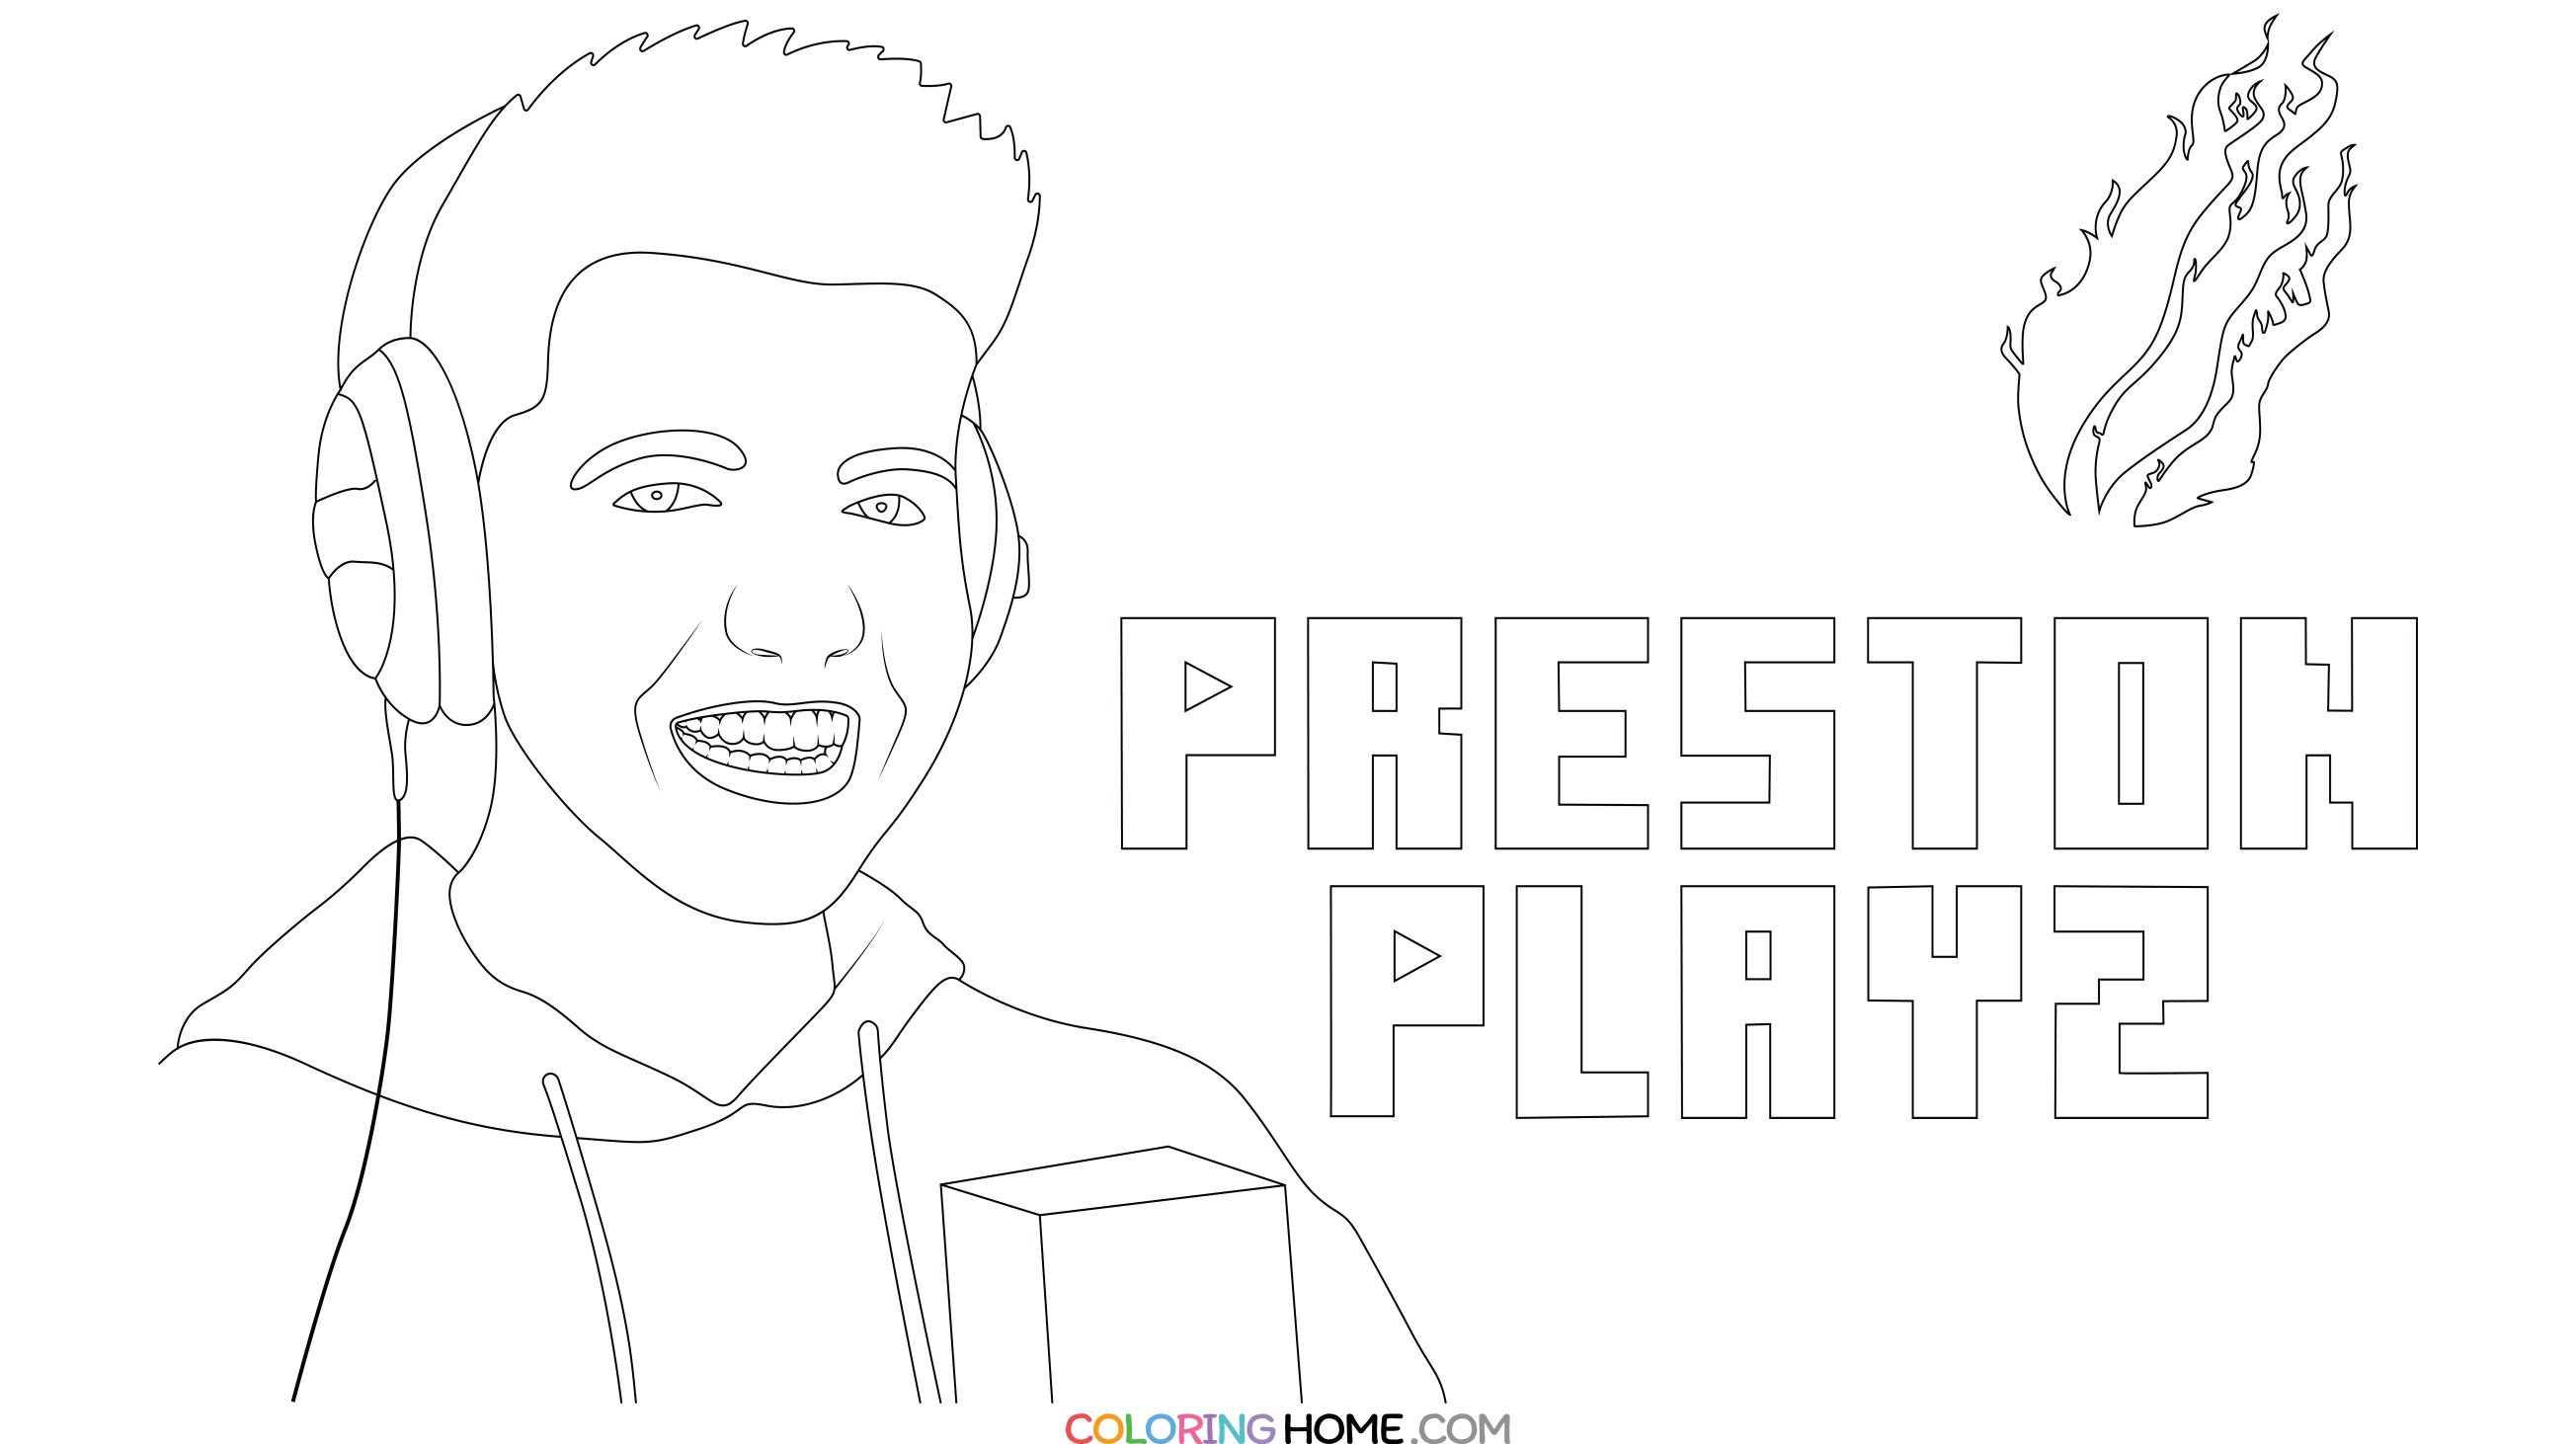 PrestonPlayz coloring page